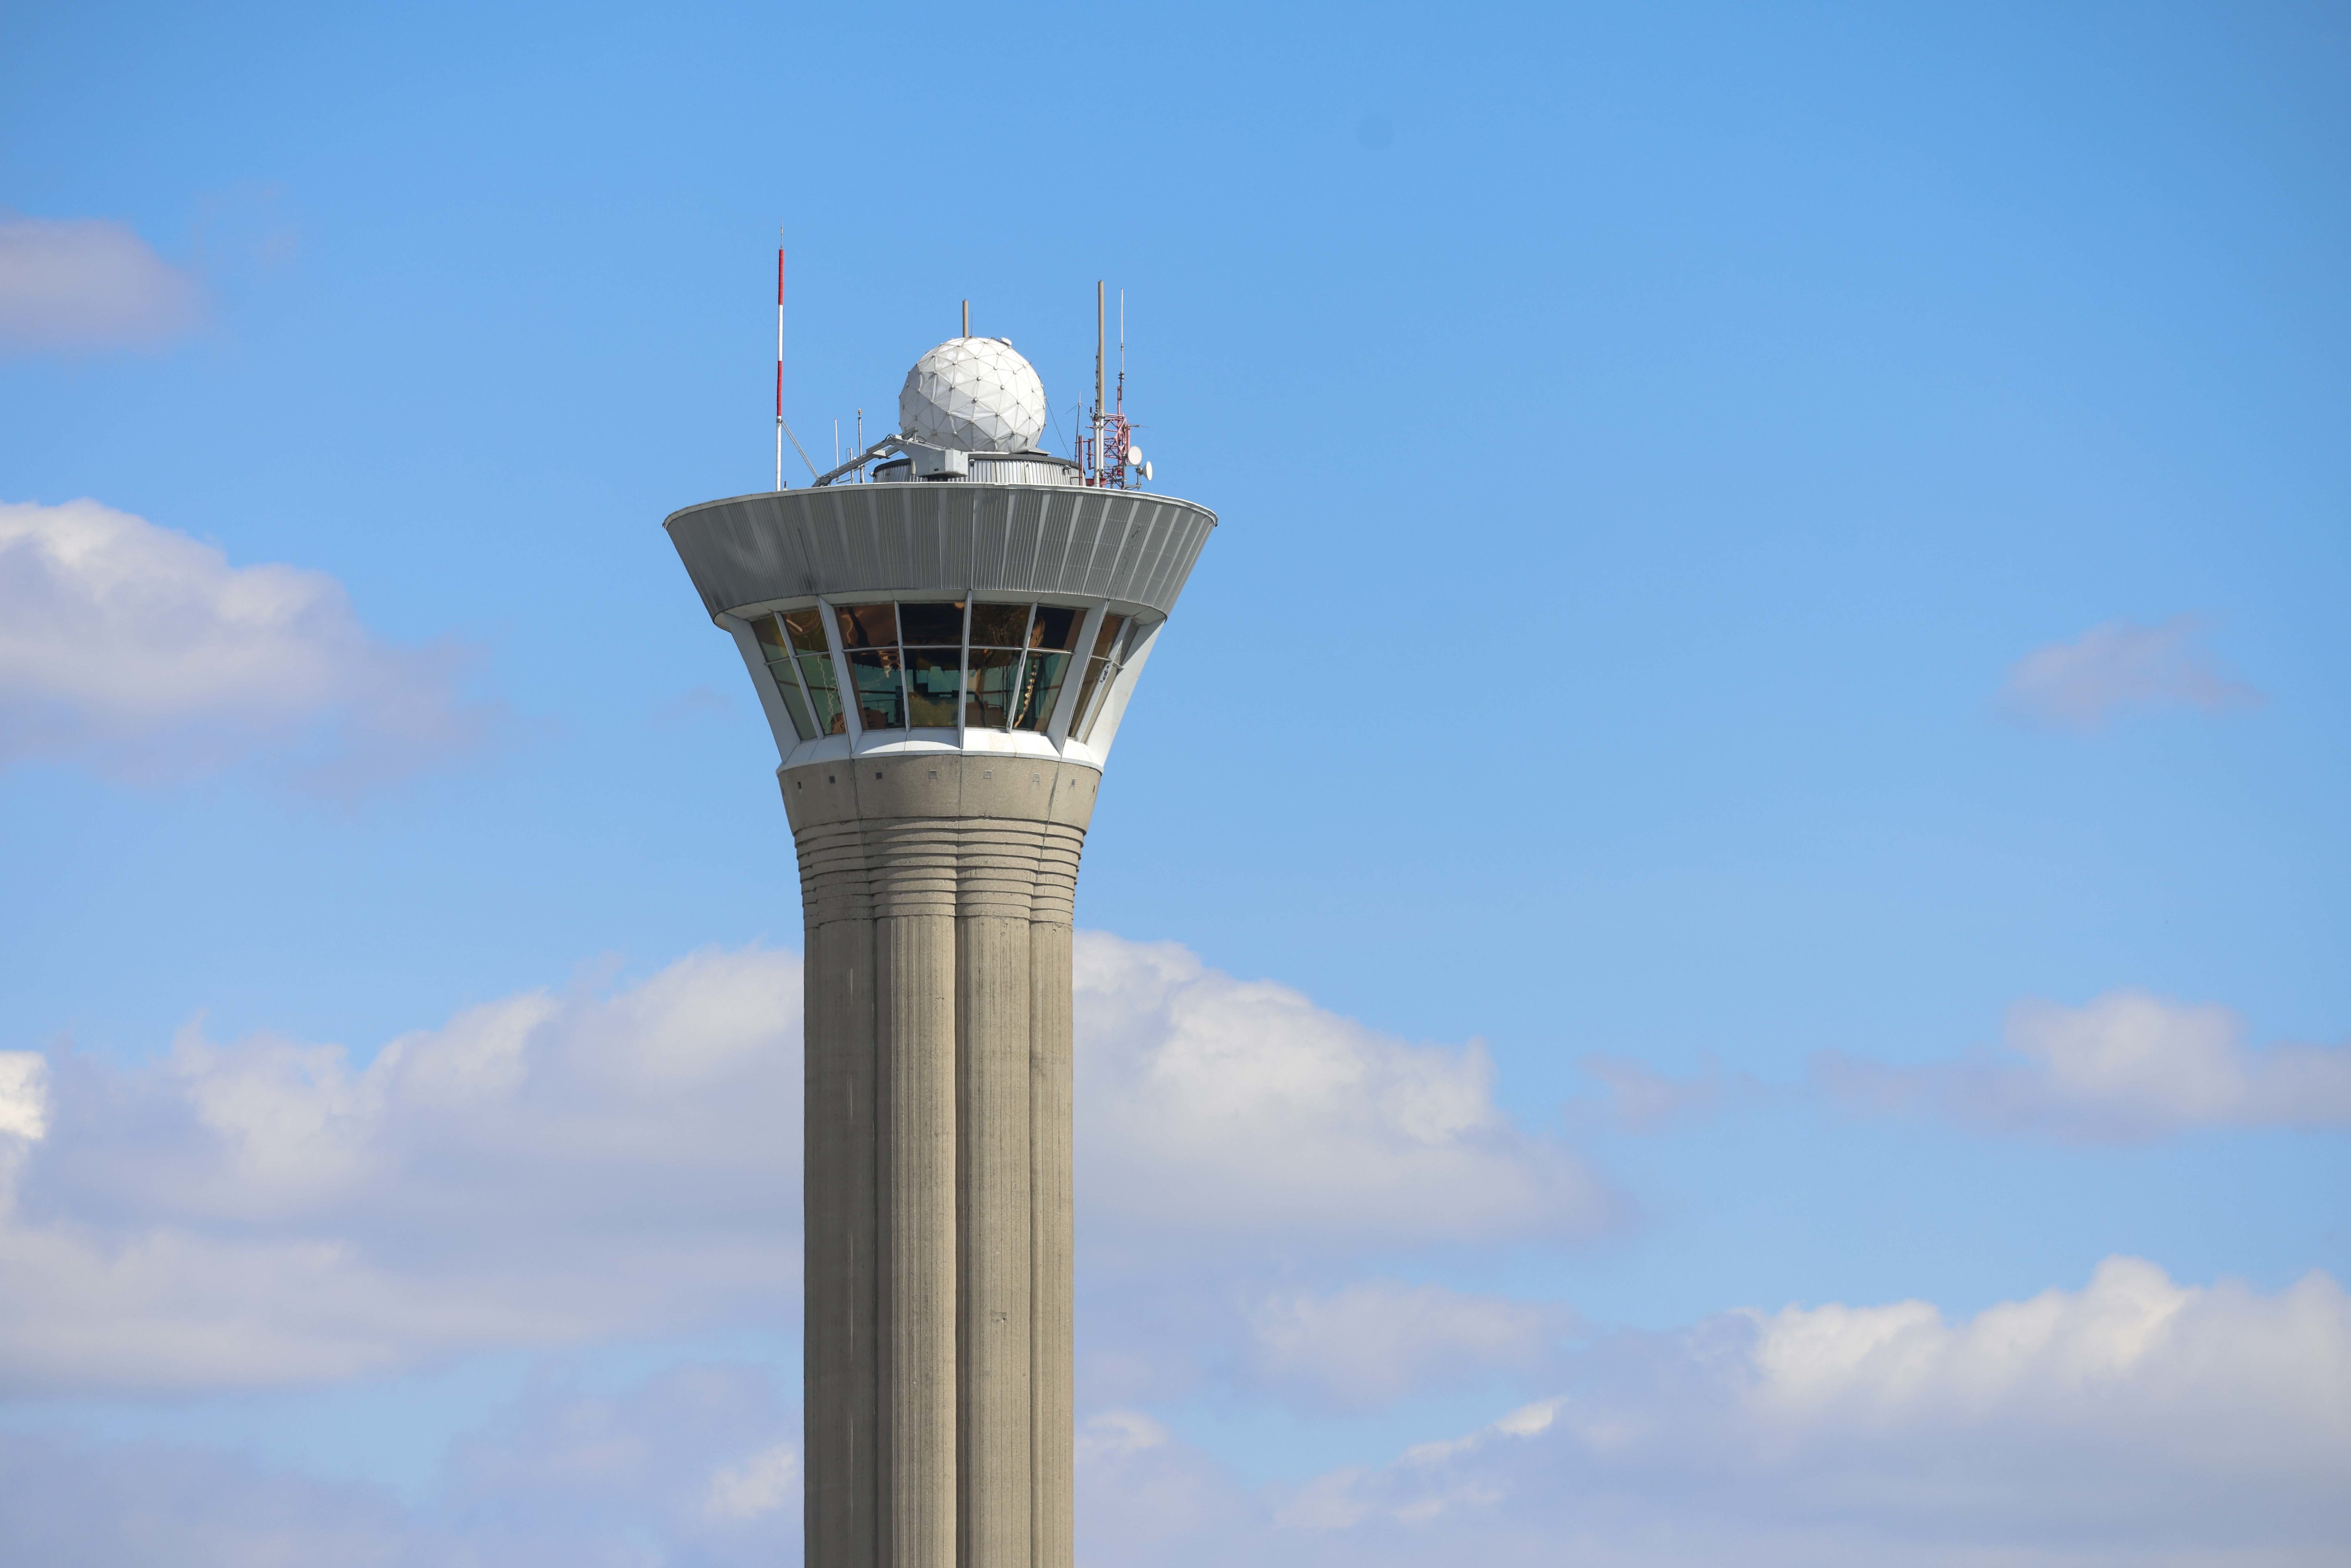 Les contrôleurs aériens travaillent le plus souvent en binôme : l’un gère les procédures de vol, tandis que l’autre surveille les appareils de contrôle, comme le radar. LP/Olivier Corsan